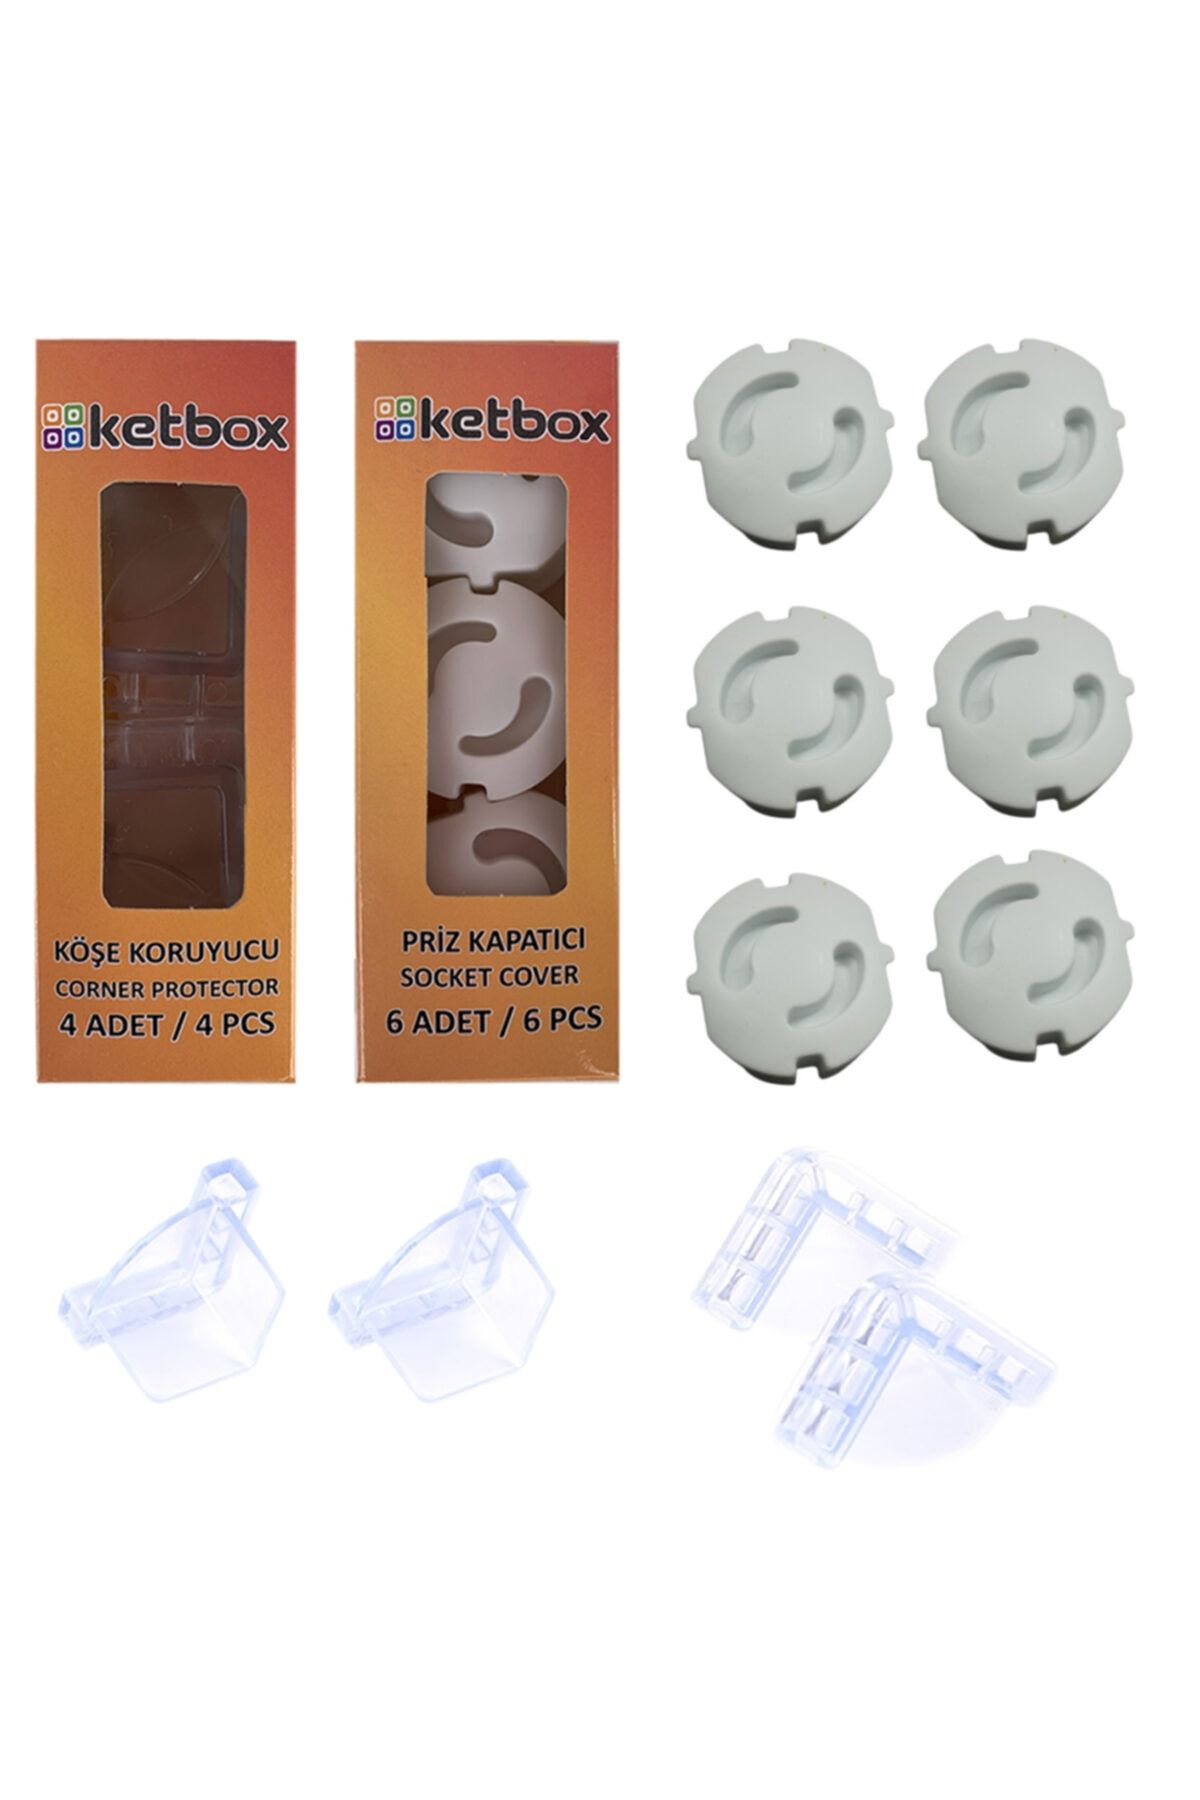 ketbox 6 Adet Priz Kapatıcı Ve 4 Adet Silikon Köşe Koruyucu 3m Bantlı Çocuk Bebek Güvenlik Set